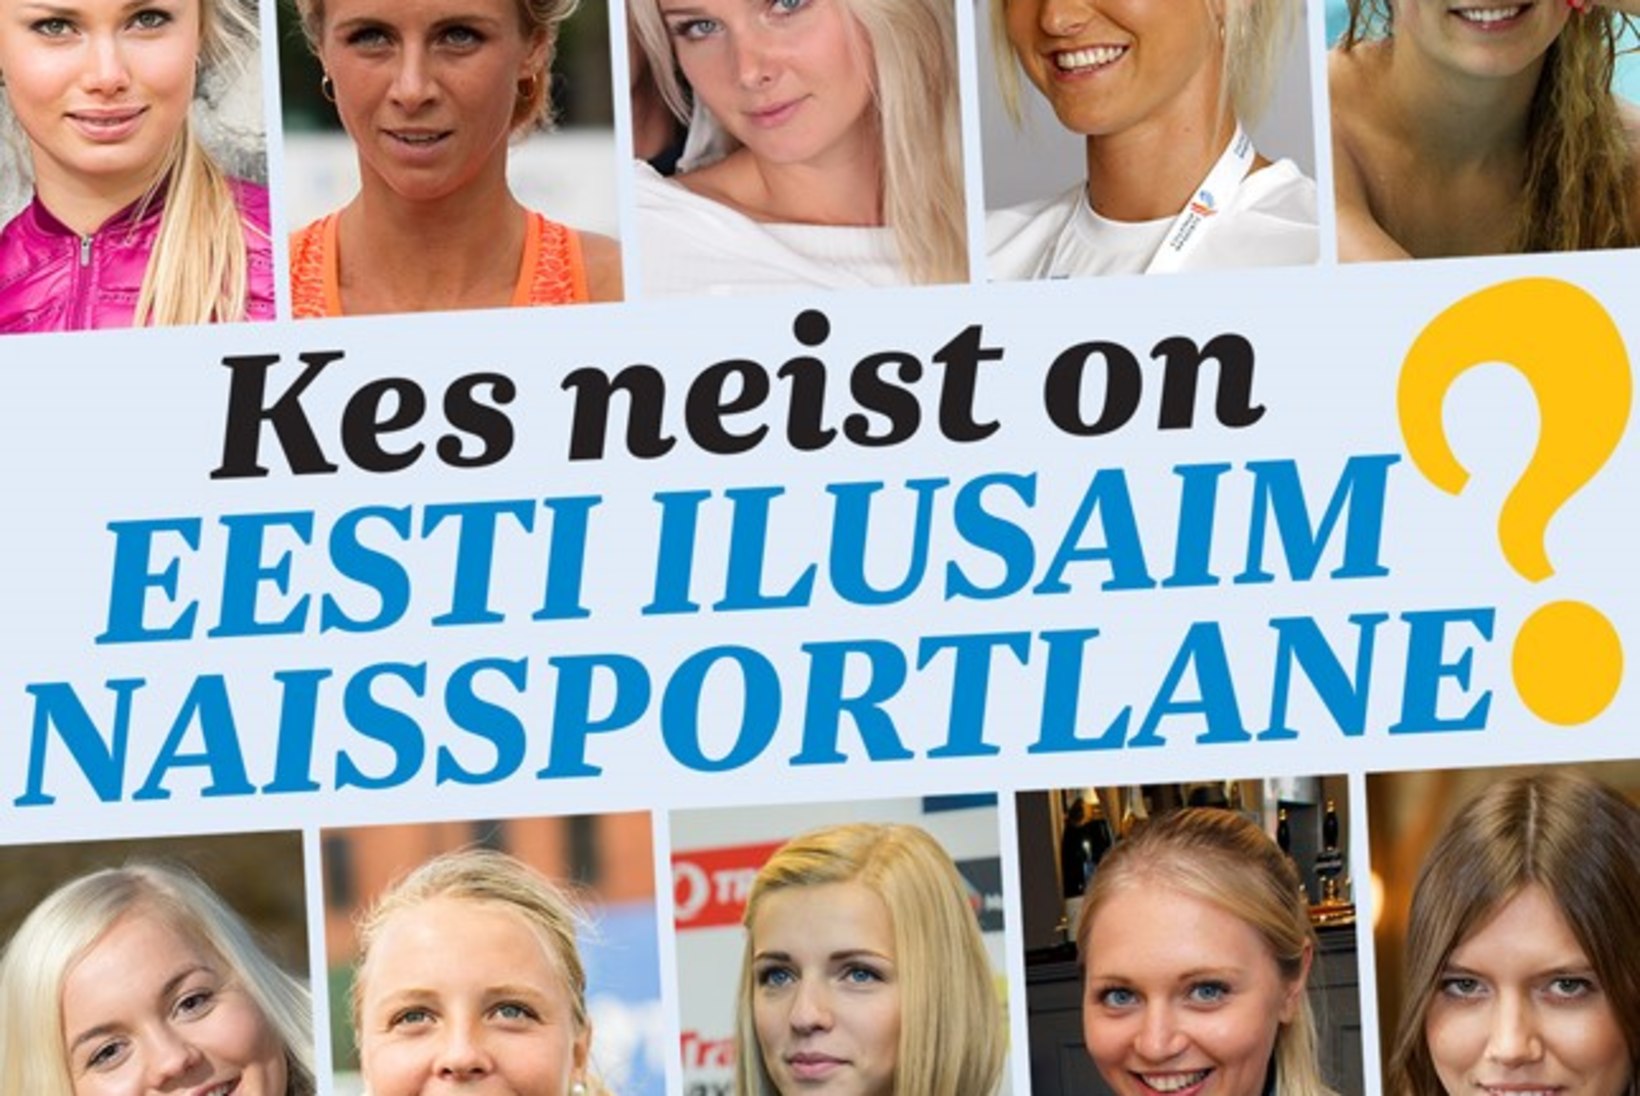 Eesti ilusaim naissportlane on äsja emaks saanud ratsutaja, kes pürib Rio olümpiale